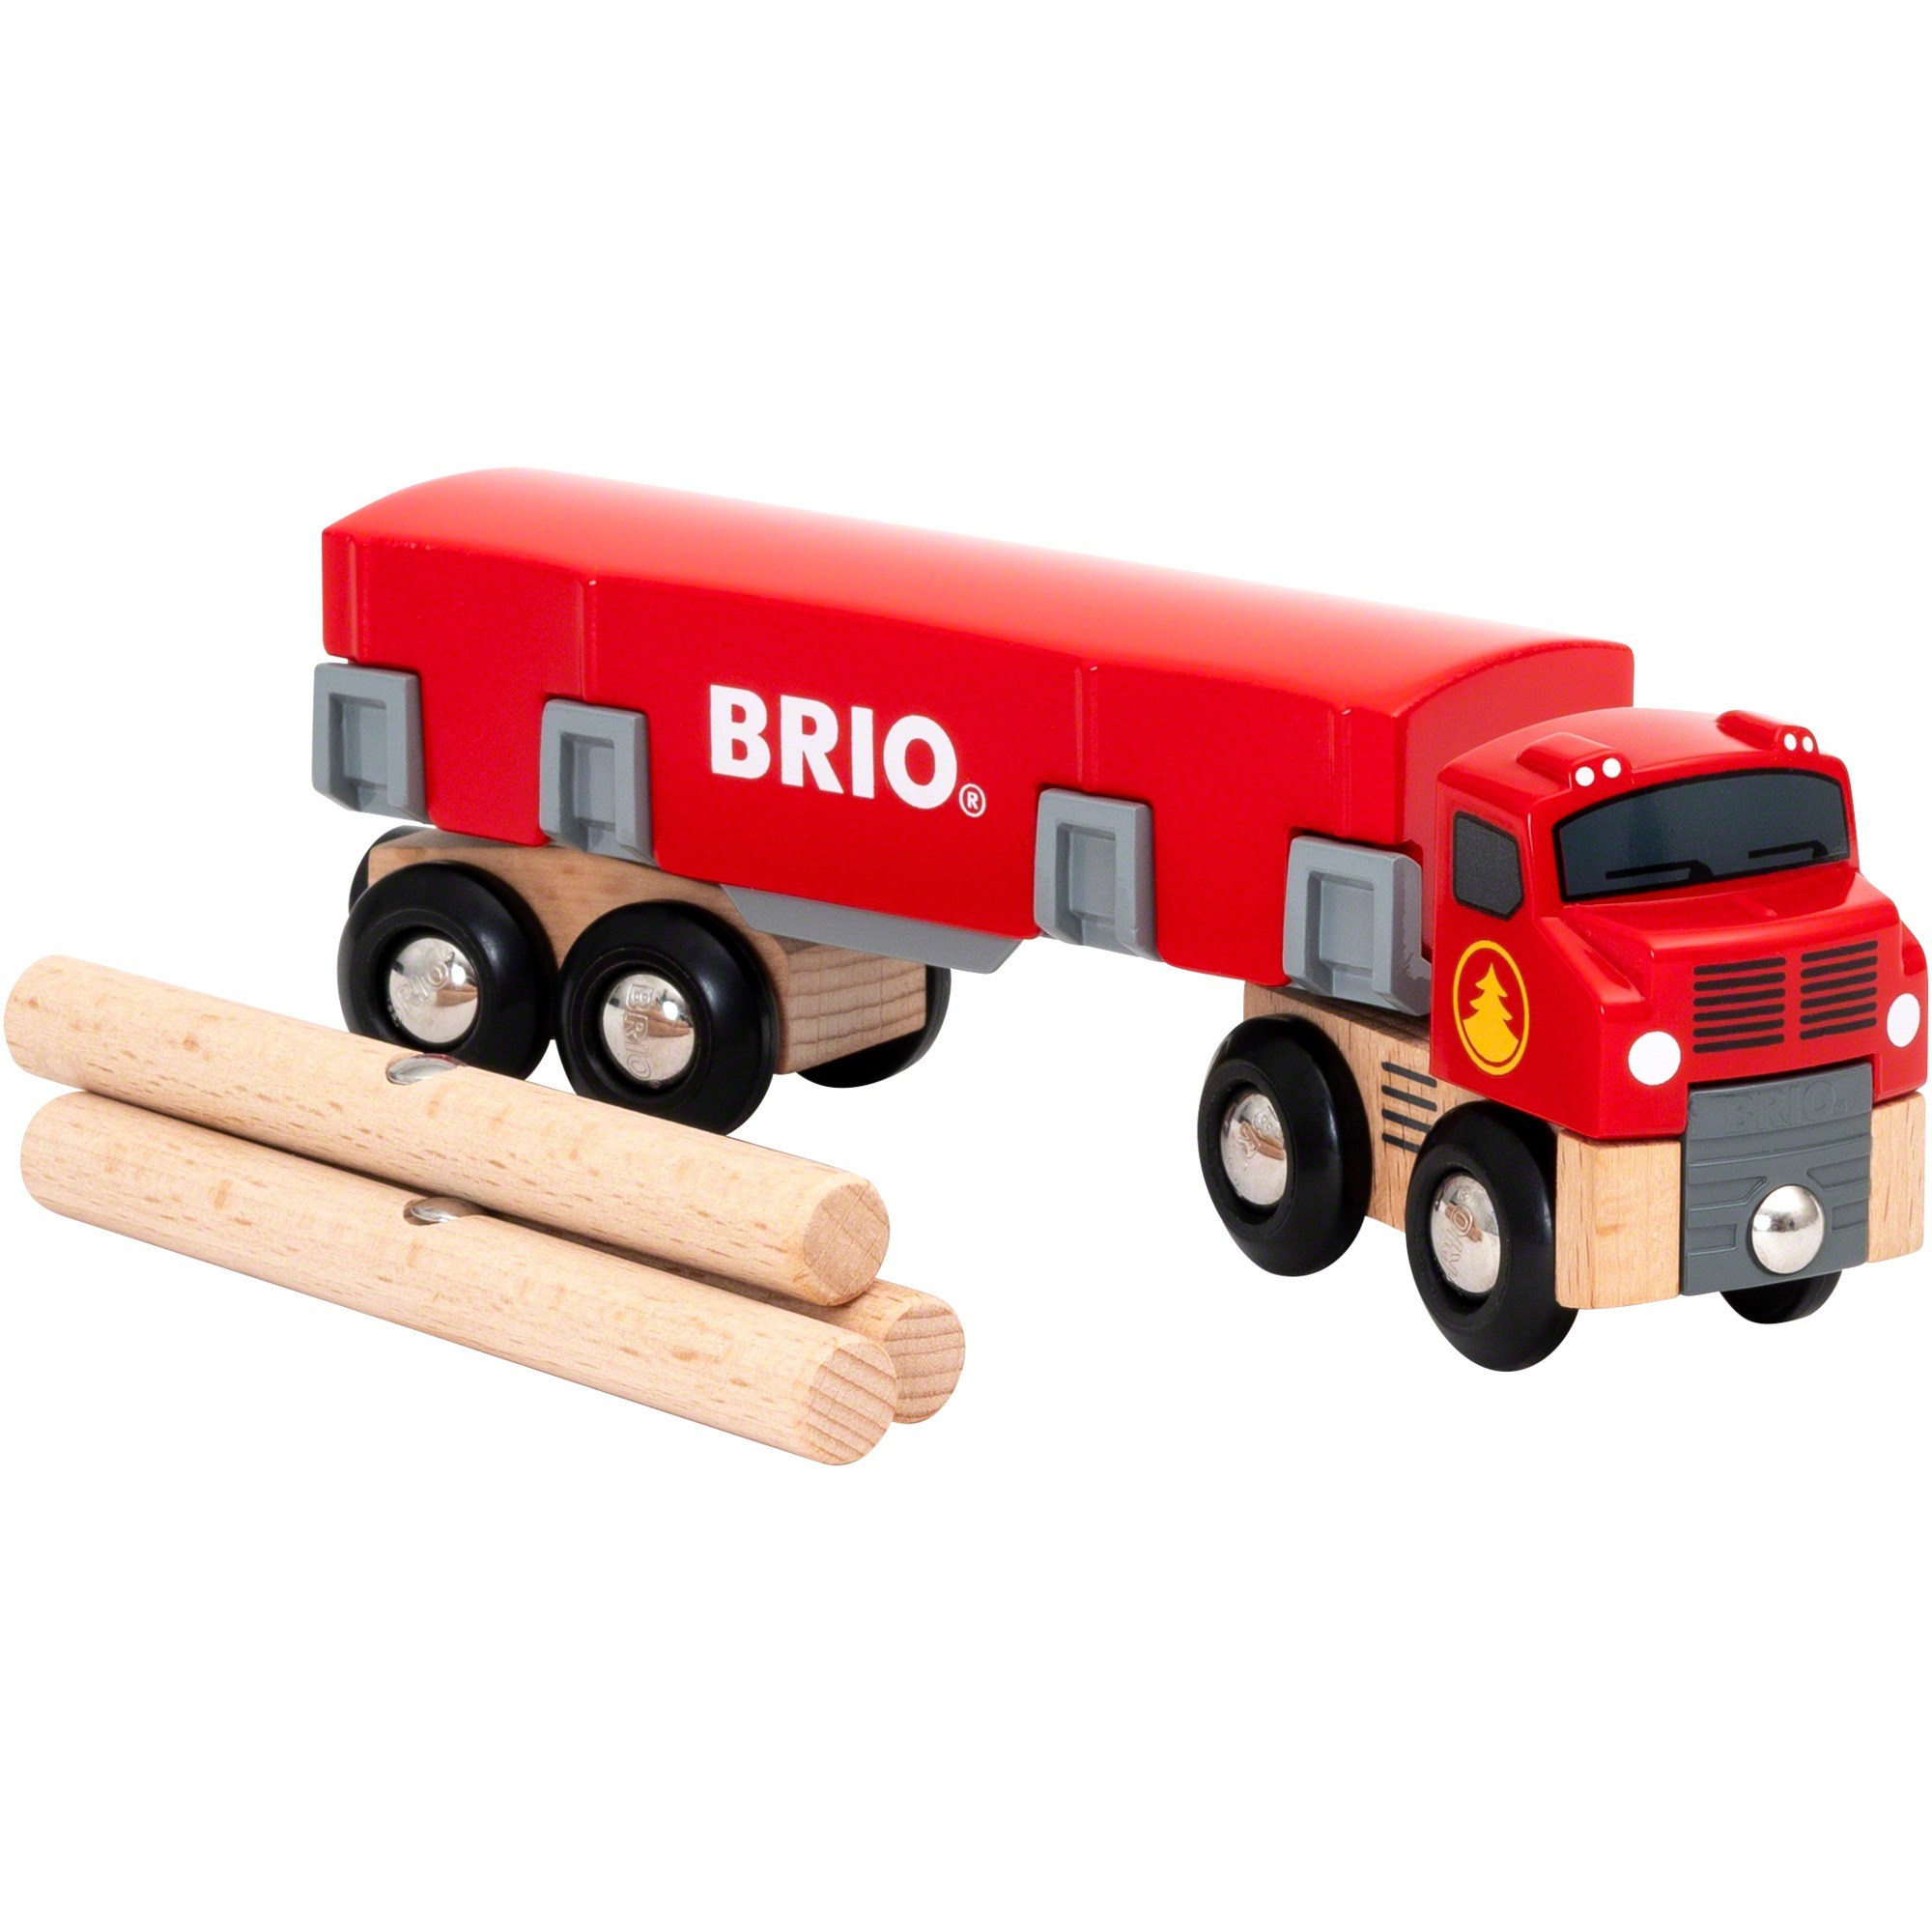 Image of Alternate - Holztransporter mit Magnetladung, Spielfahrzeug online einkaufen bei Alternate